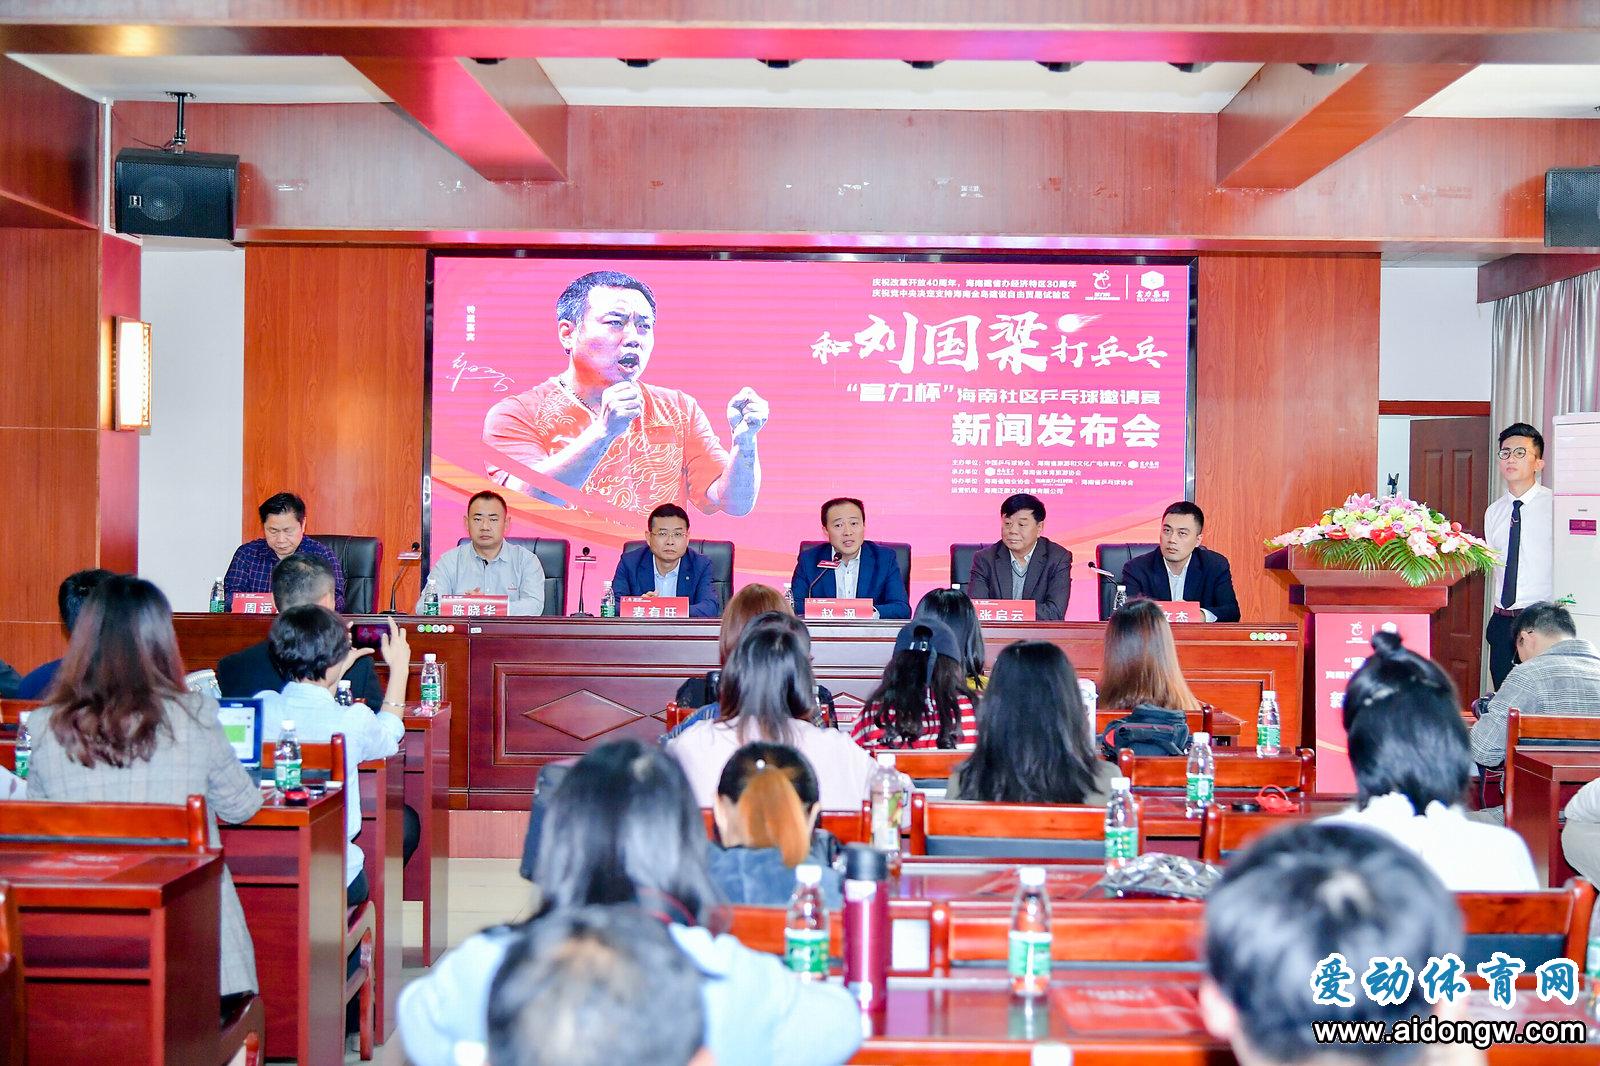 和刘国梁打乒乓——“富力杯”海南社区乒乓球邀请赛新闻发布会举行